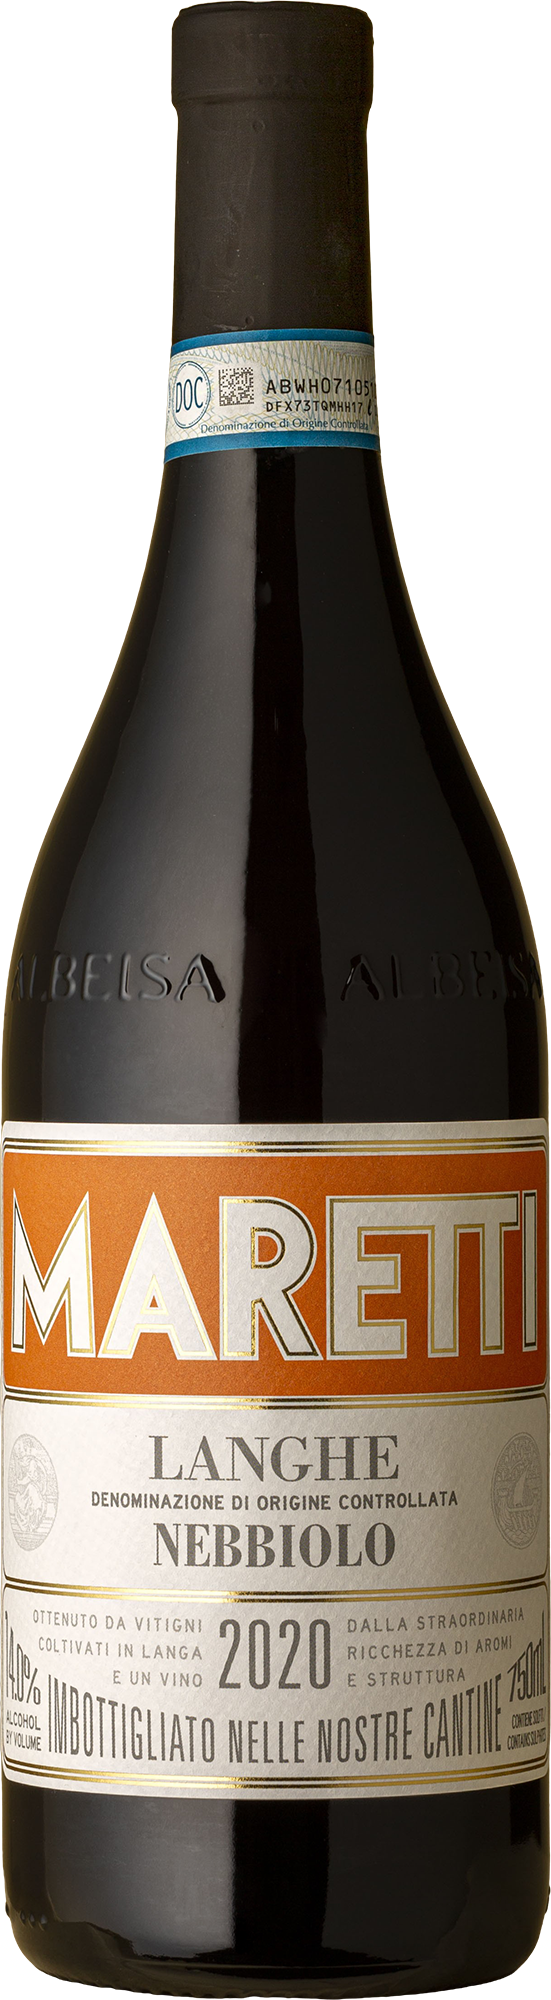 Maretti - Langhe Nebbiolo 2020 Red Wine